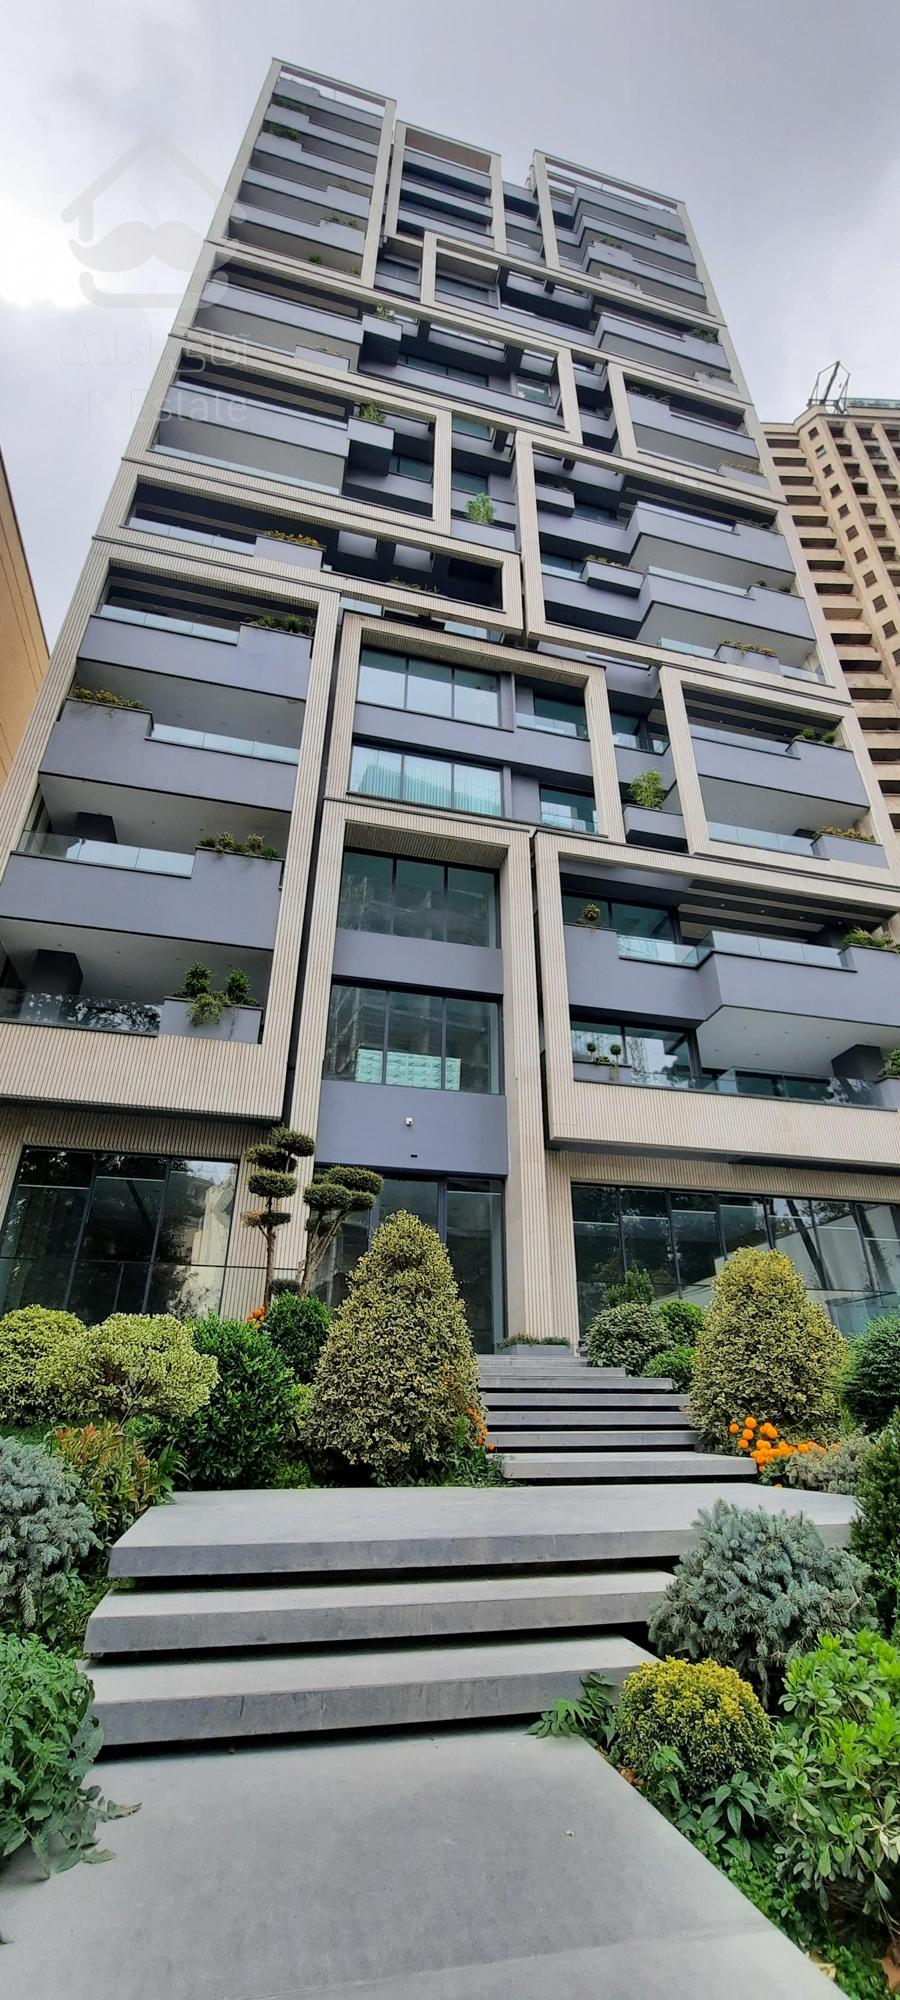 فروش آپارتمان ۳۳۱ متر برج باغ در کامرانیه